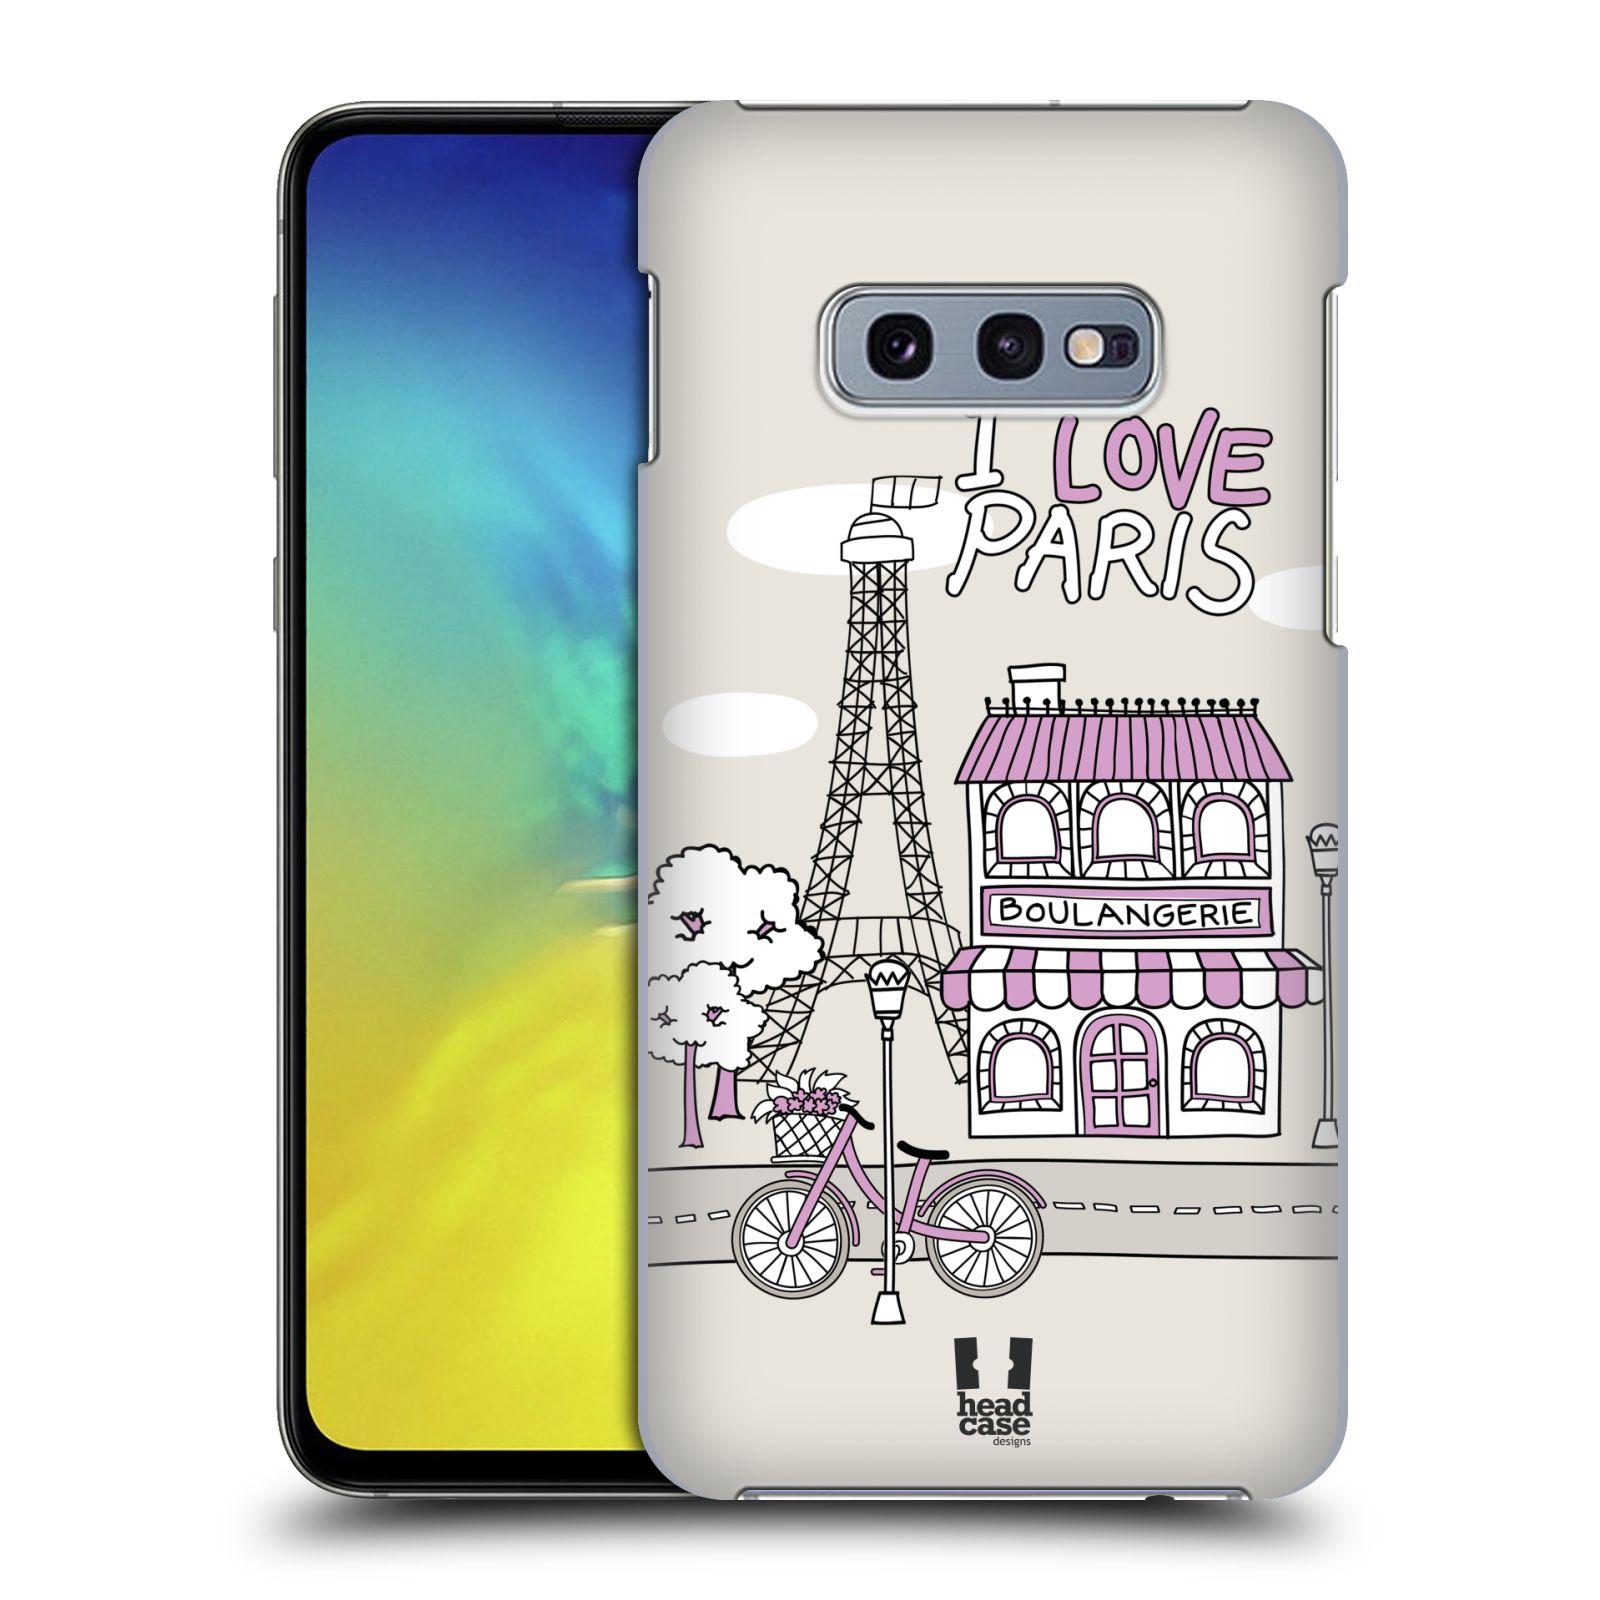 Pouzdro na mobil Samsung Galaxy S10e - HEAD CASE - vzor Kreslená městečka FIALOVÁ, Paříž, Francie, I LOVE PARIS